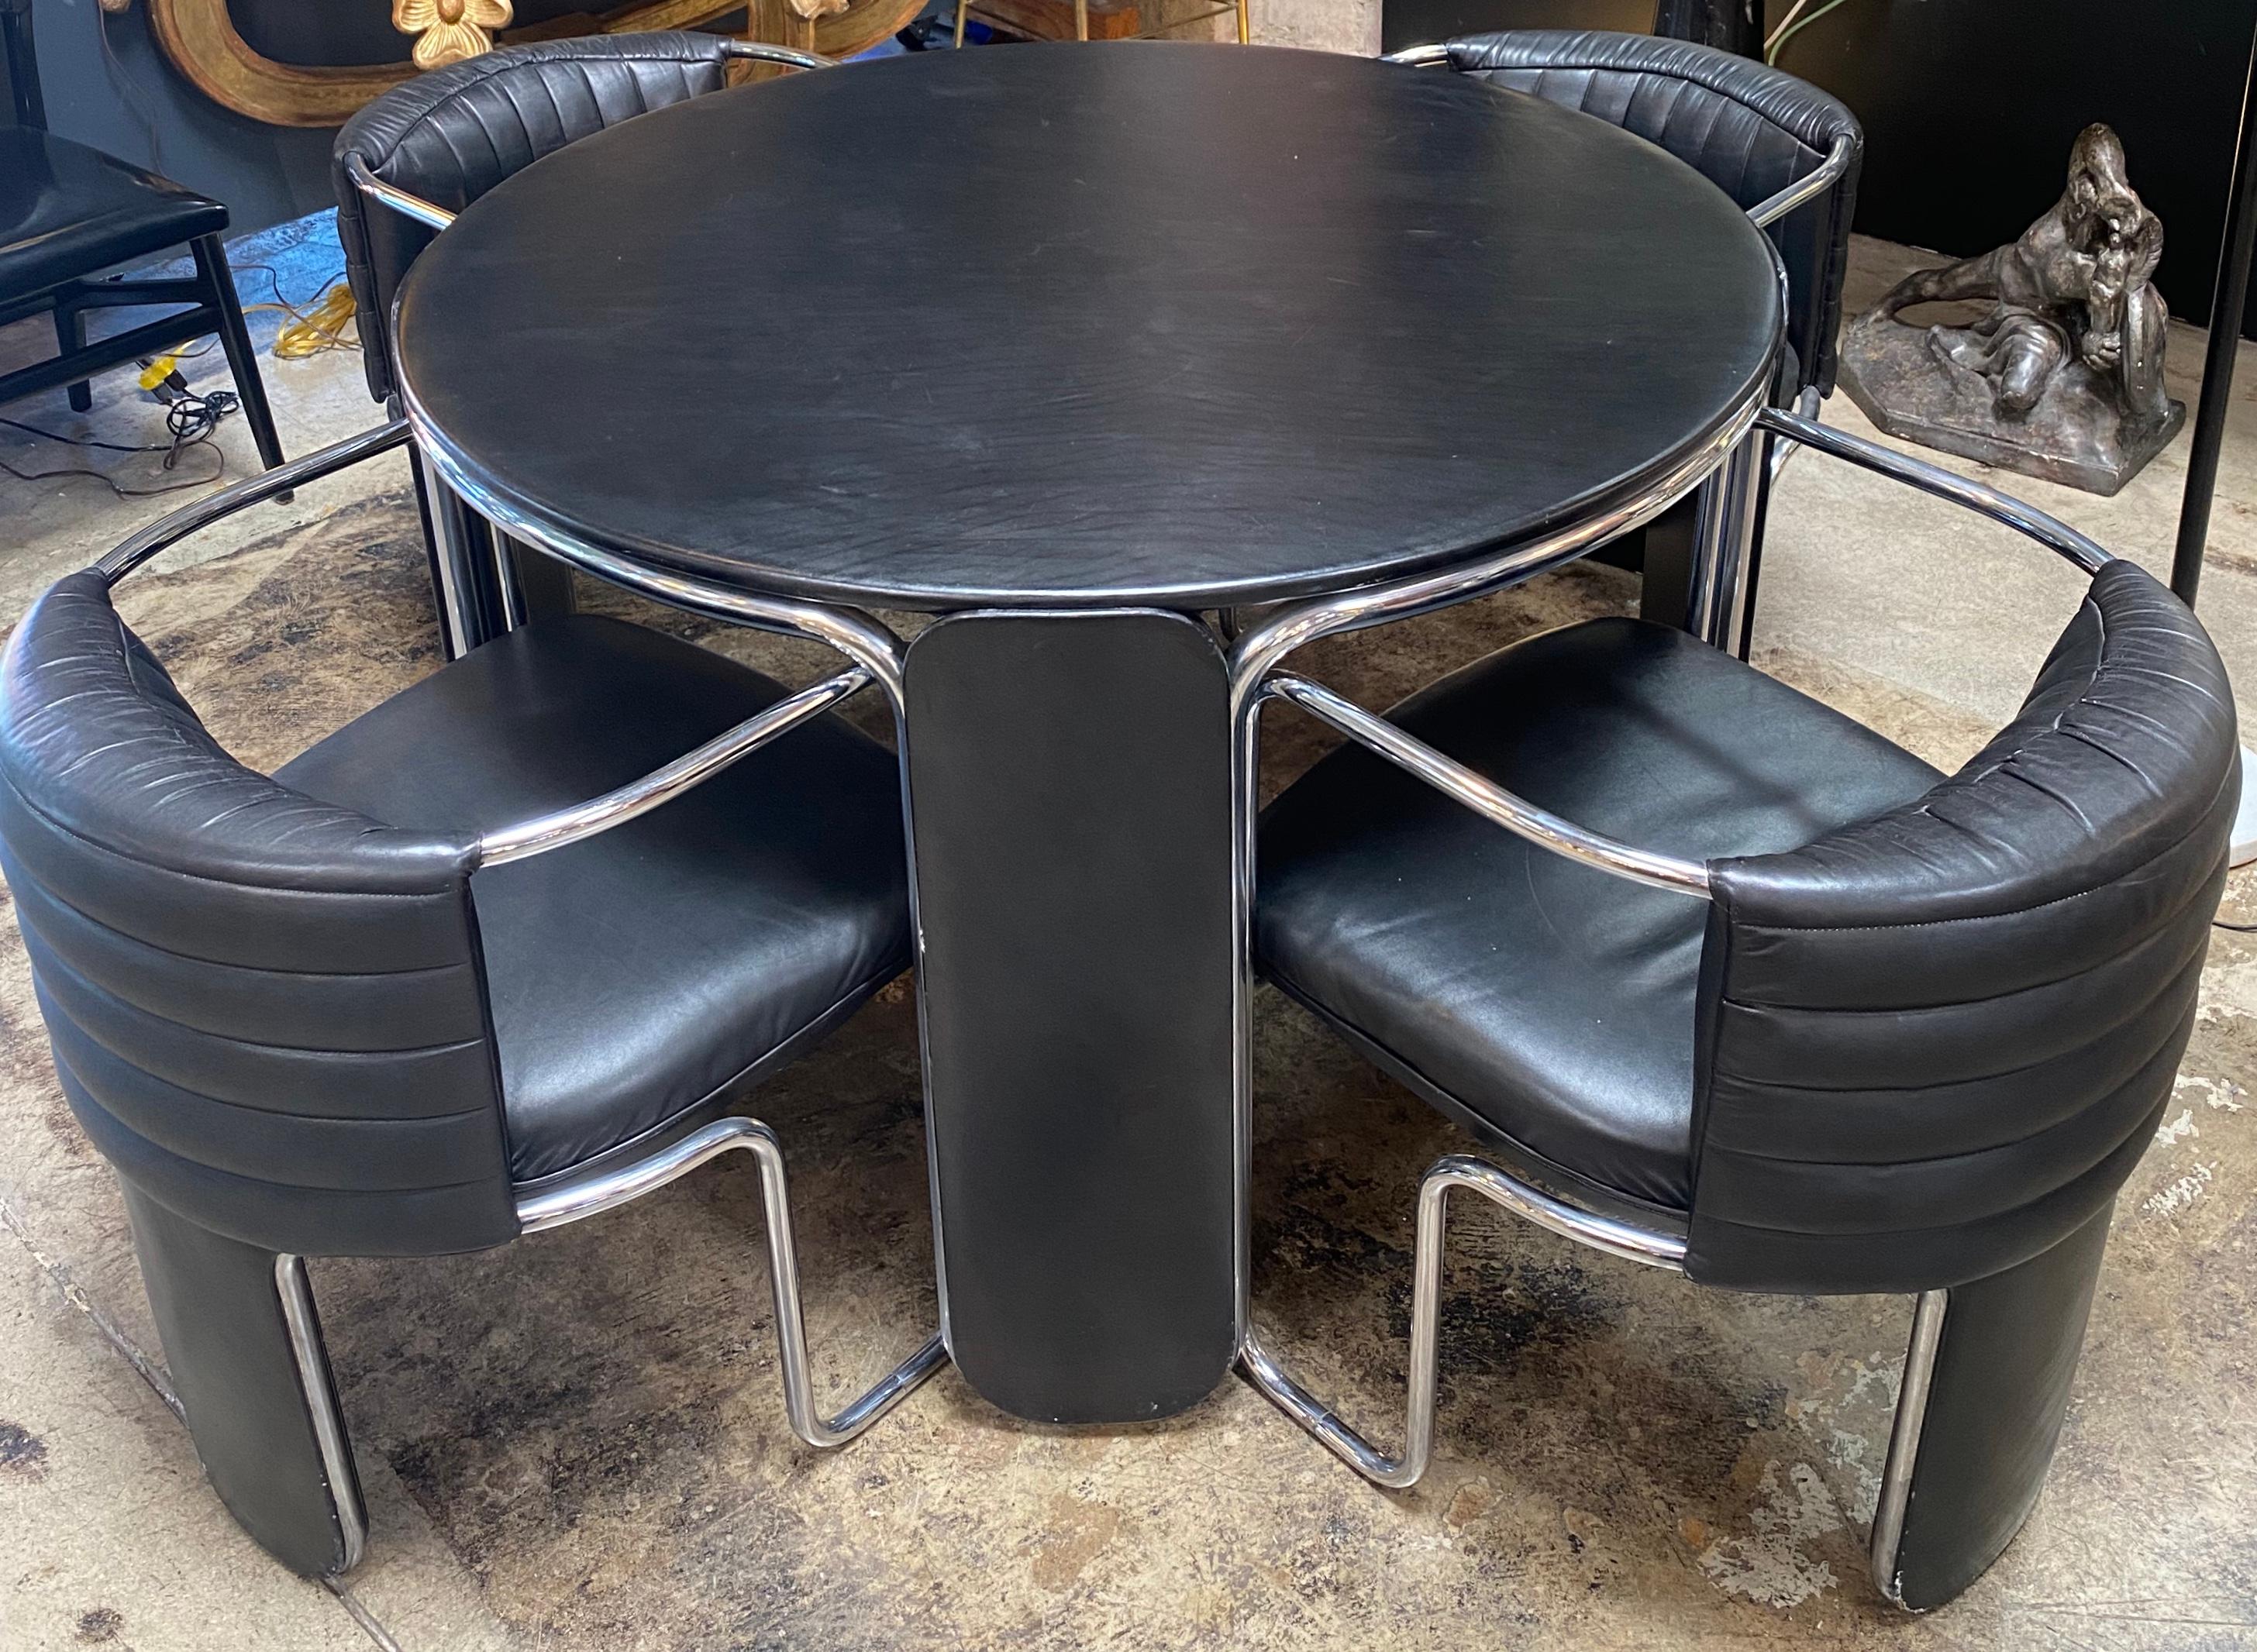 Außergewöhnlicher Spieltisch mit passenden Stühlen aus Leder und Chrom von Luigi Massoni für Poltrona Frau. Der Tisch stammt aus dem Jahr 1975 und befindet sich in einem sehr guten Zustand.

Der in Mailand geborene Massoni wurde am Collettivo di